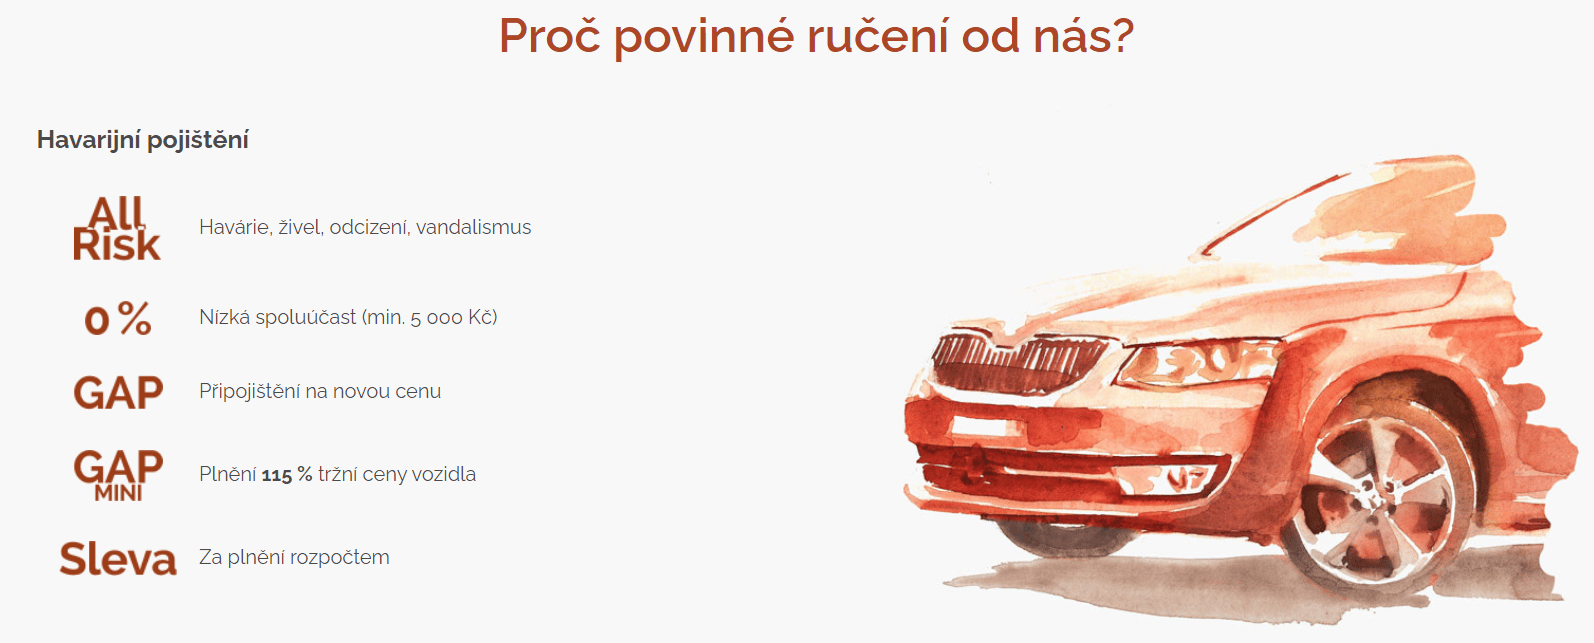 Slavia Povinne Ruceni Vyhody